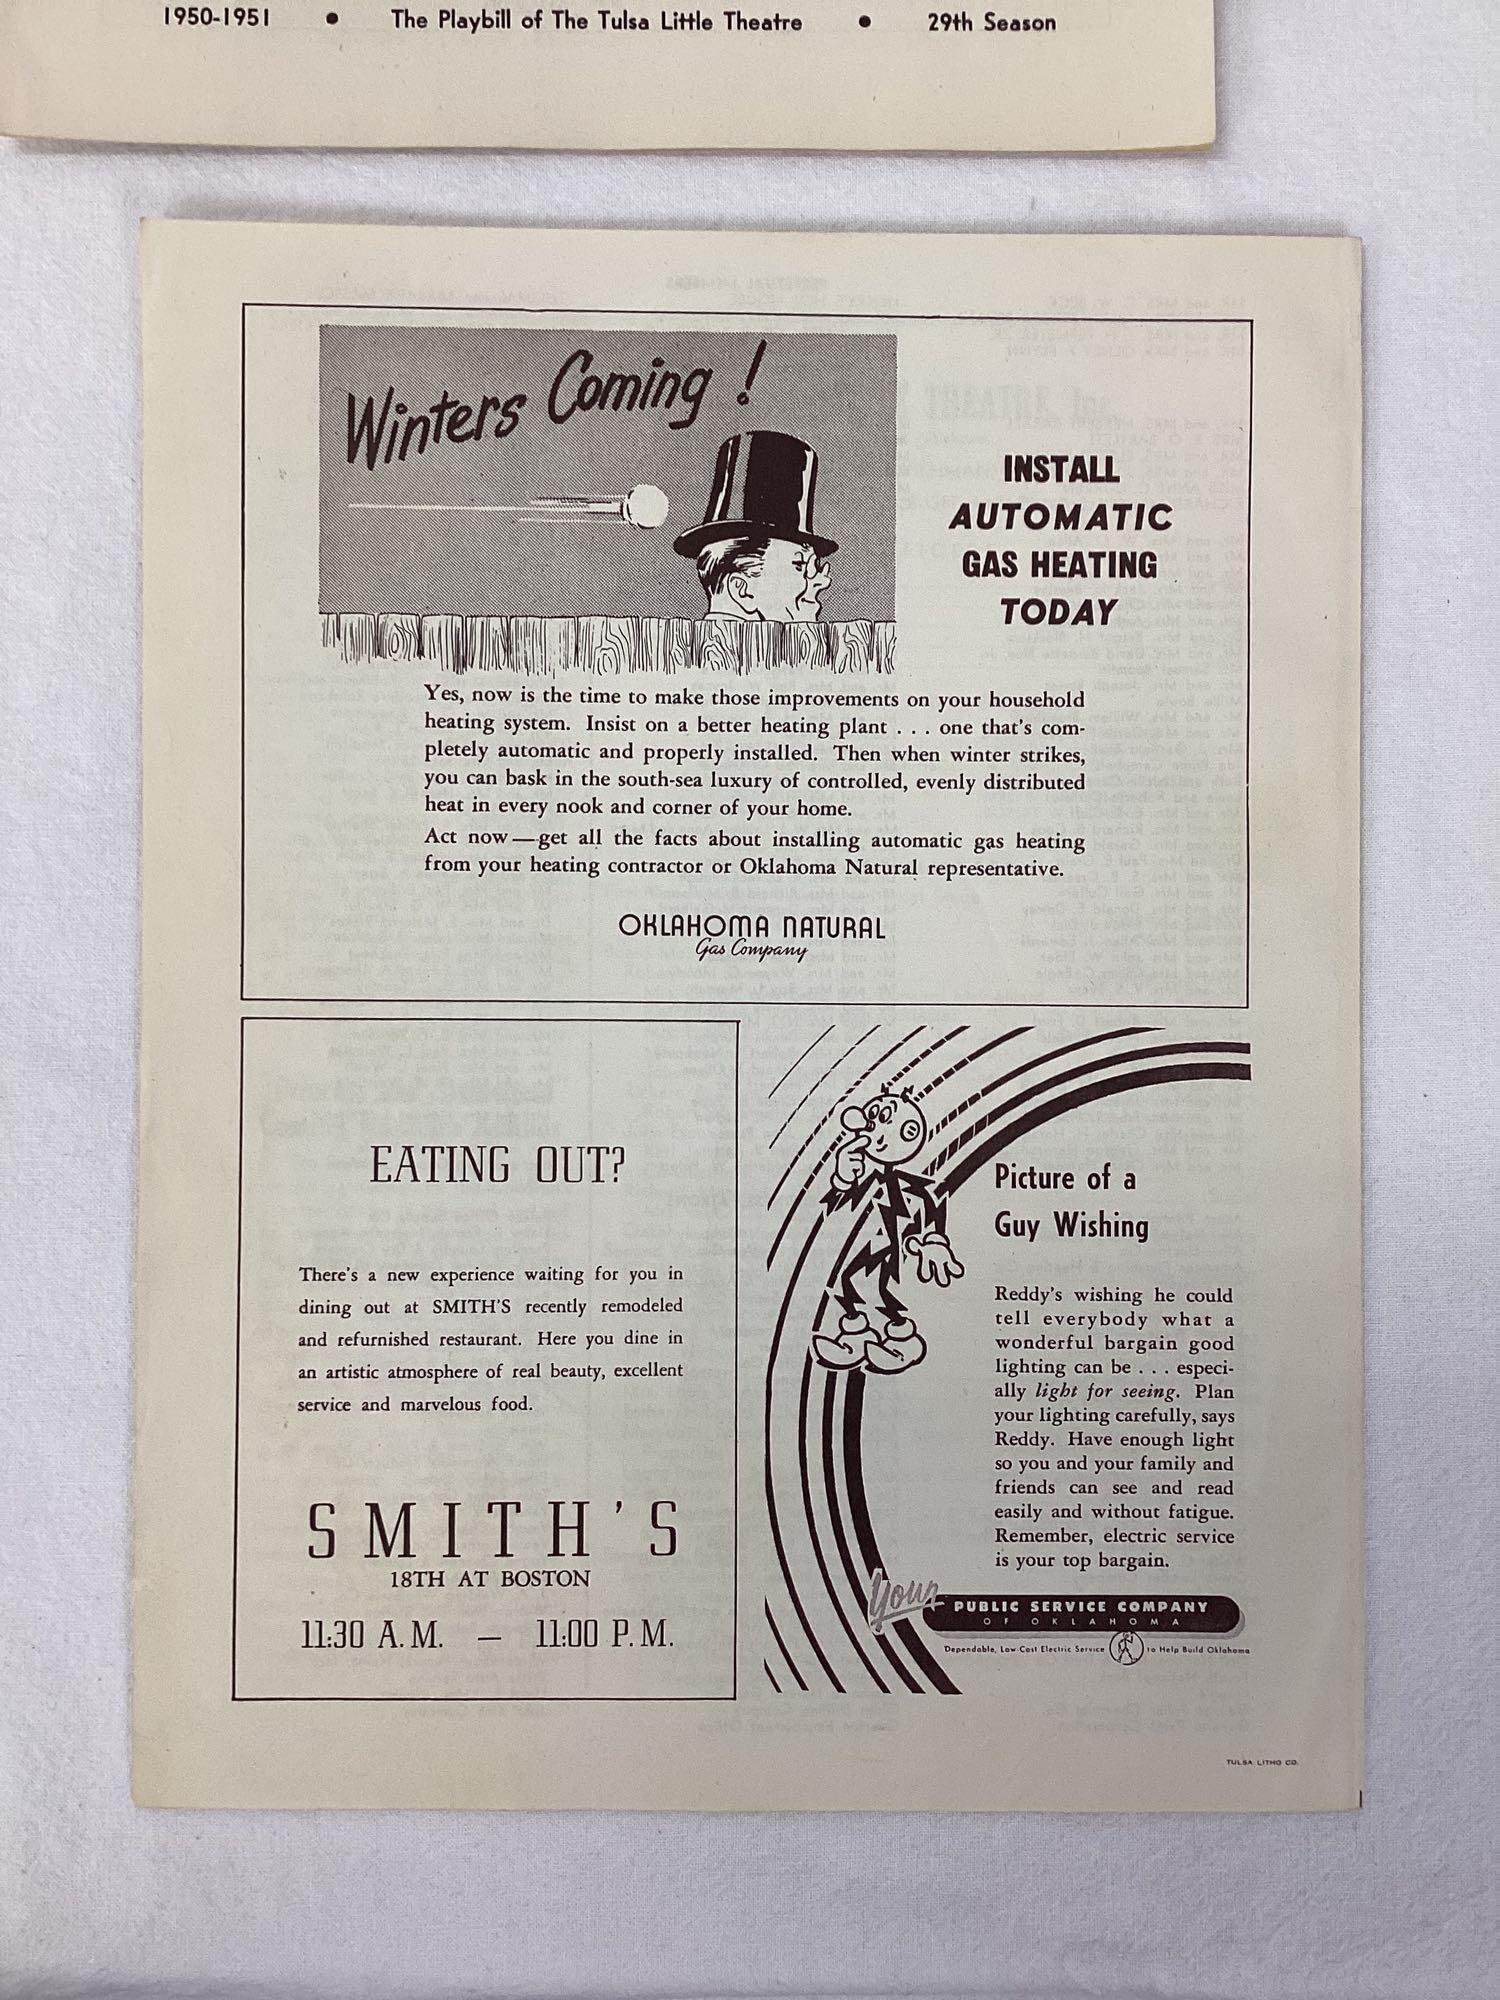 Six 1940's "Little Theater" Tulsa, OK Playbills